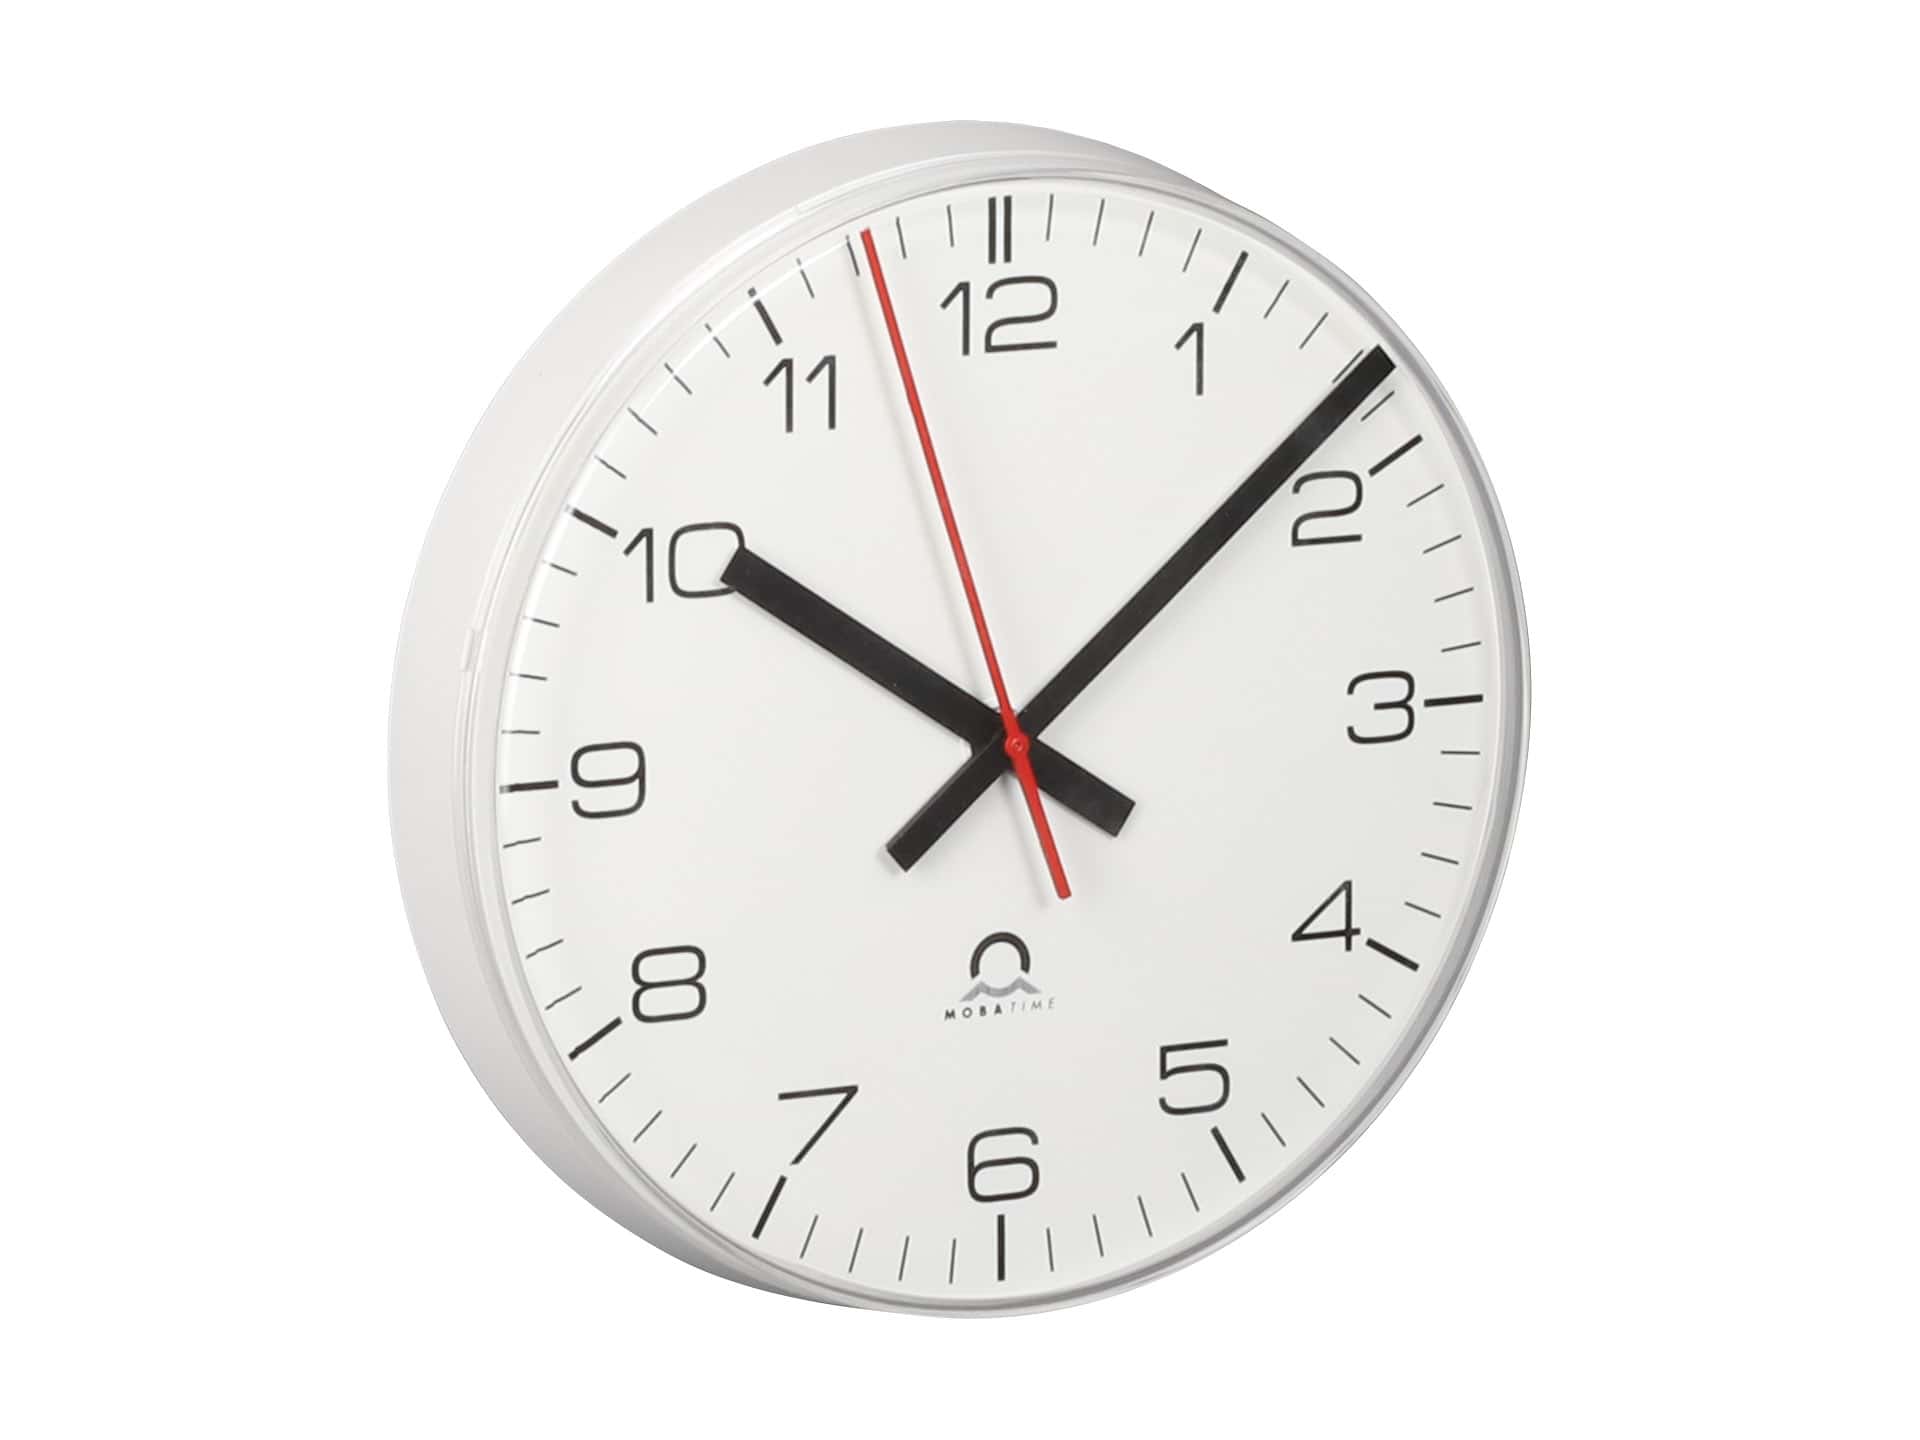 ECO Analogue Indoor Clock – MOBATIME